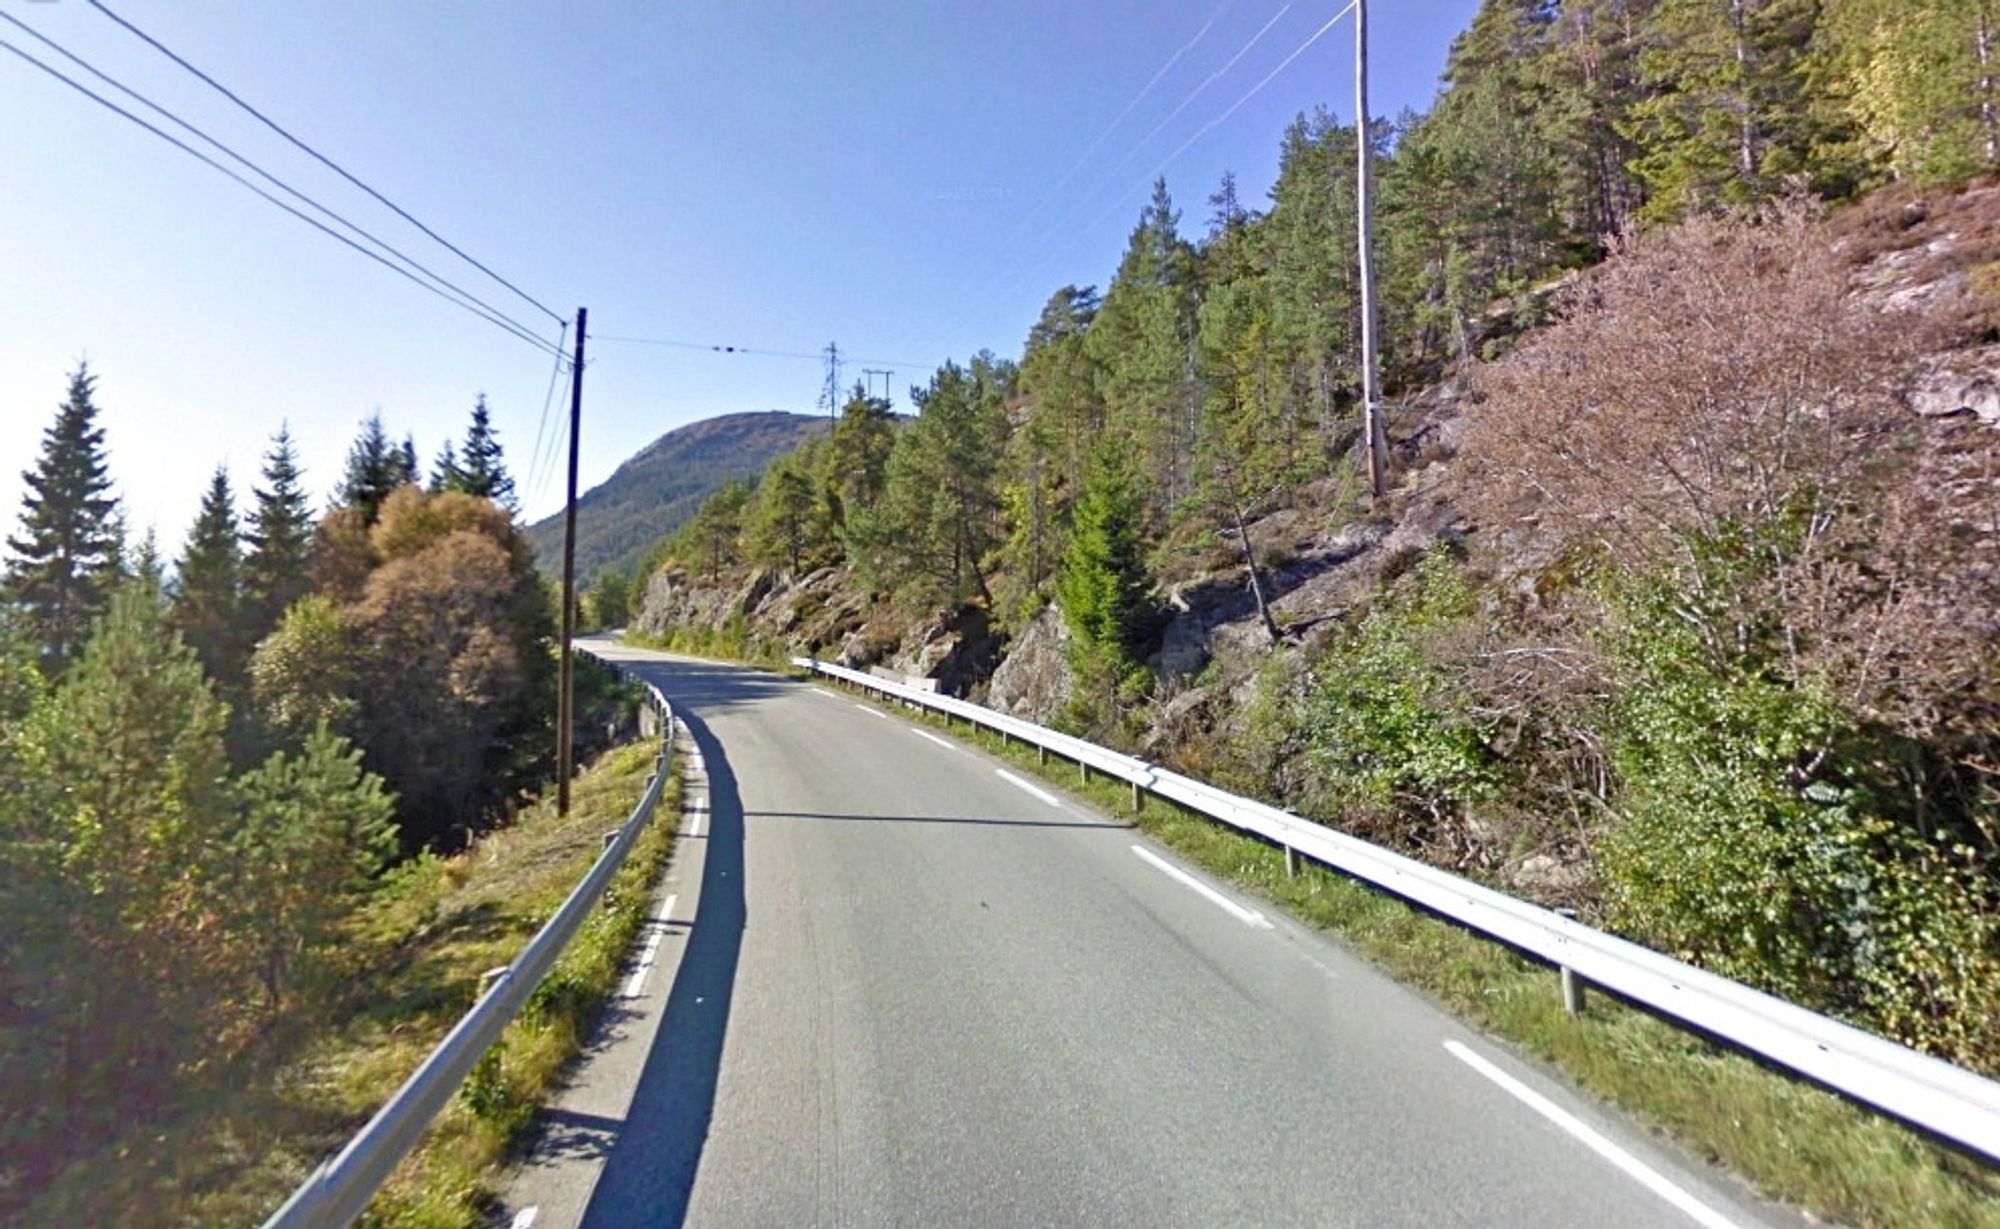 Her ved Grøtvika mellom Vanvikan og kommunesentret i Leksvik blir en kurve på fylkesveg 755 rettet ut. Her er vegen så smal at store biler ikke kan møtes. (Foto: Google)